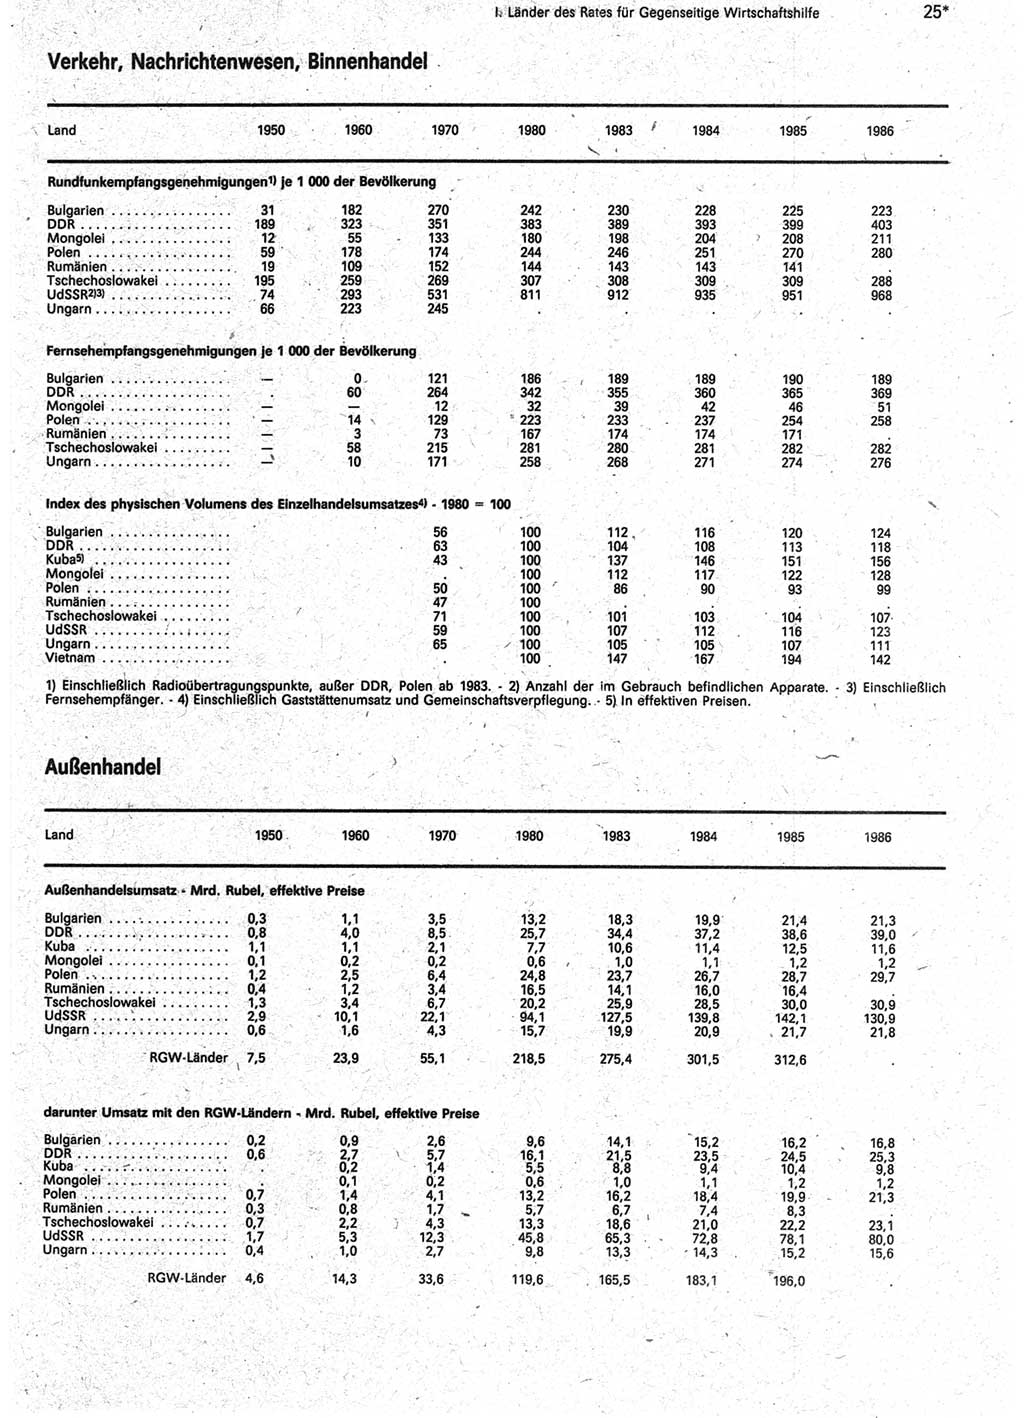 Statistisches Jahrbuch der Deutschen Demokratischen Republik (DDR) 1988, Seite 25 (Stat. Jb. DDR 1988, S. 25)